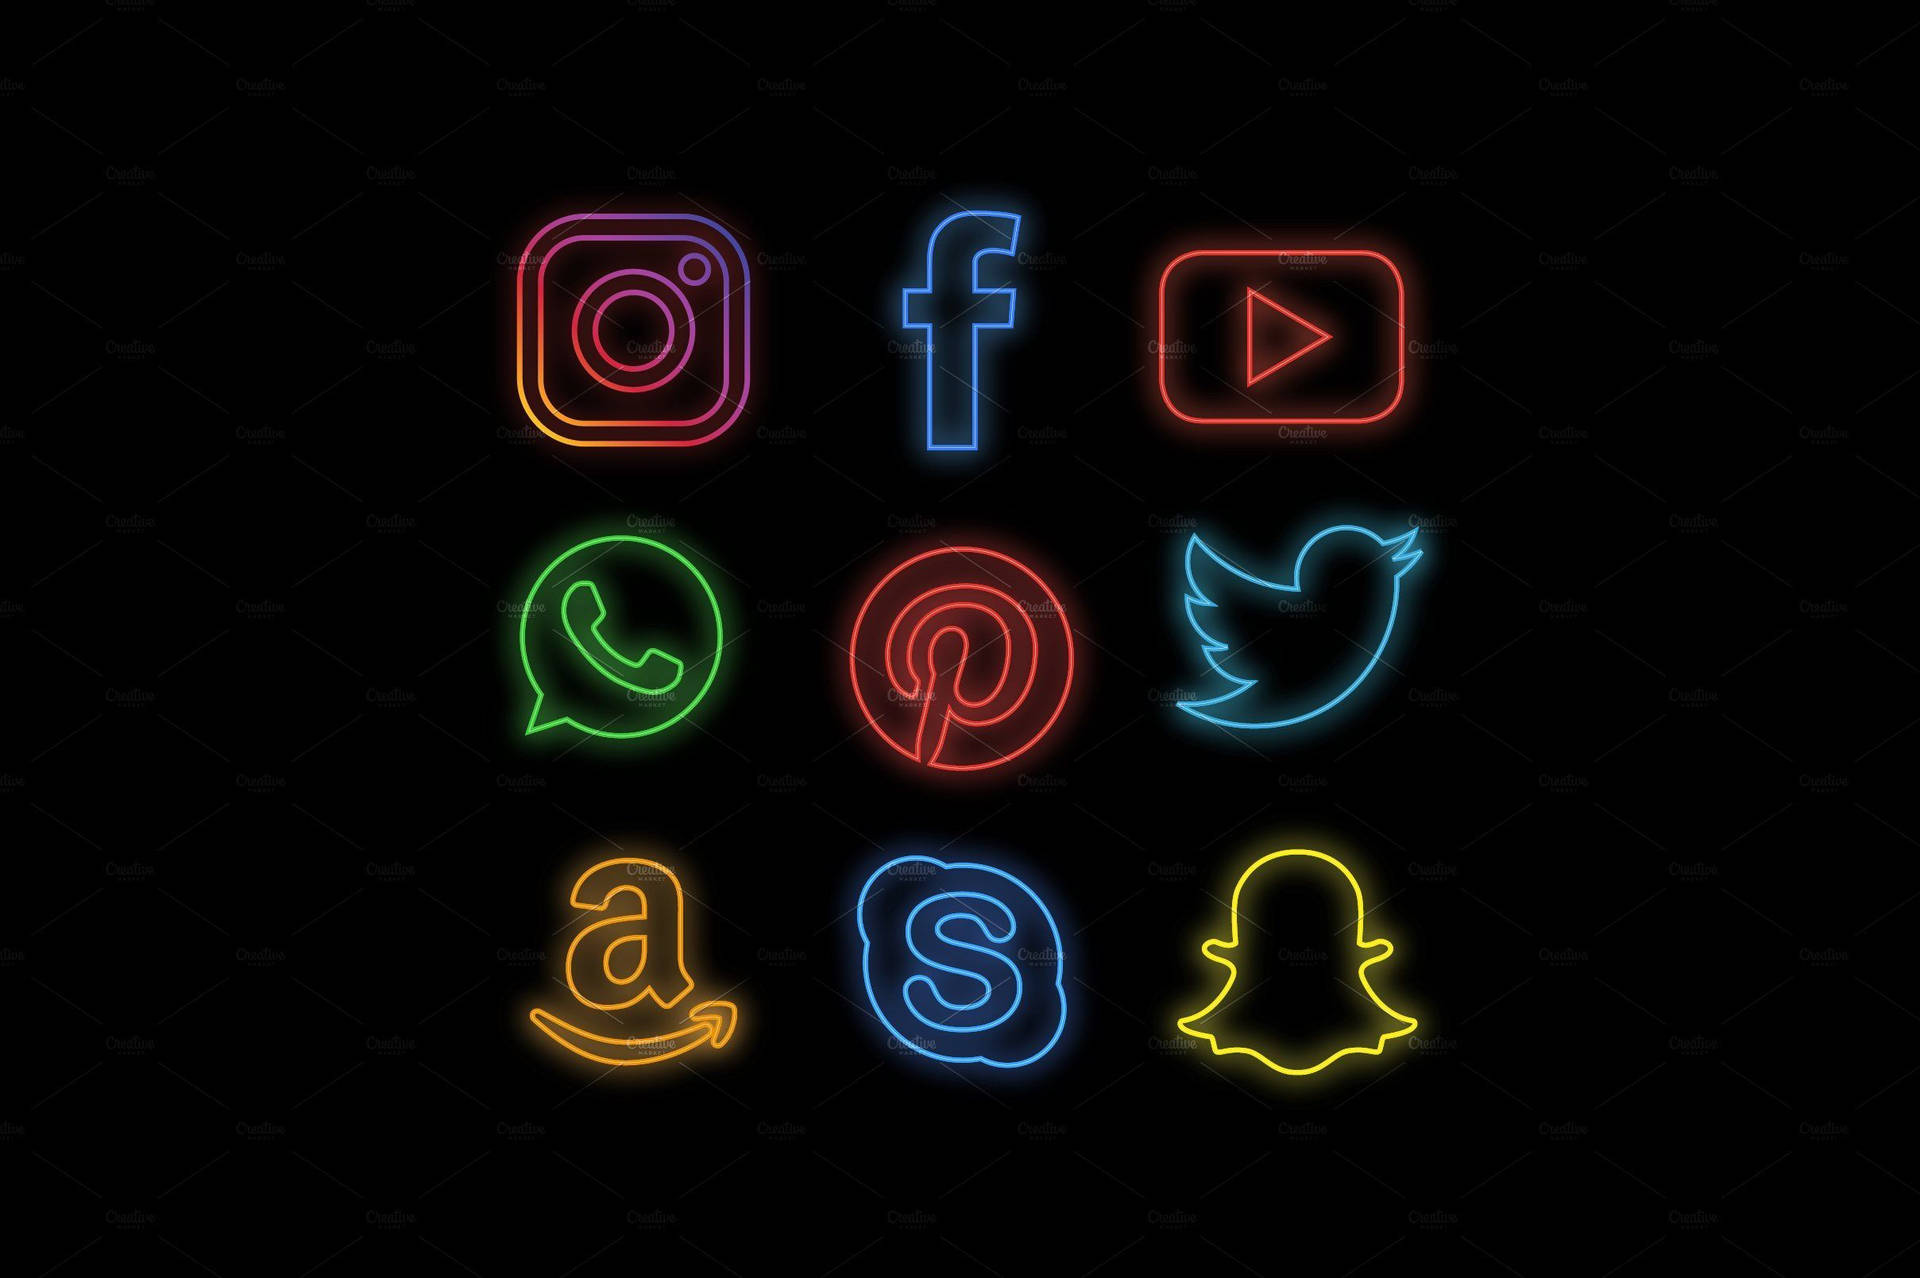 Minimalistisk sociale medier logo sort & hvid wallpaper Wallpaper